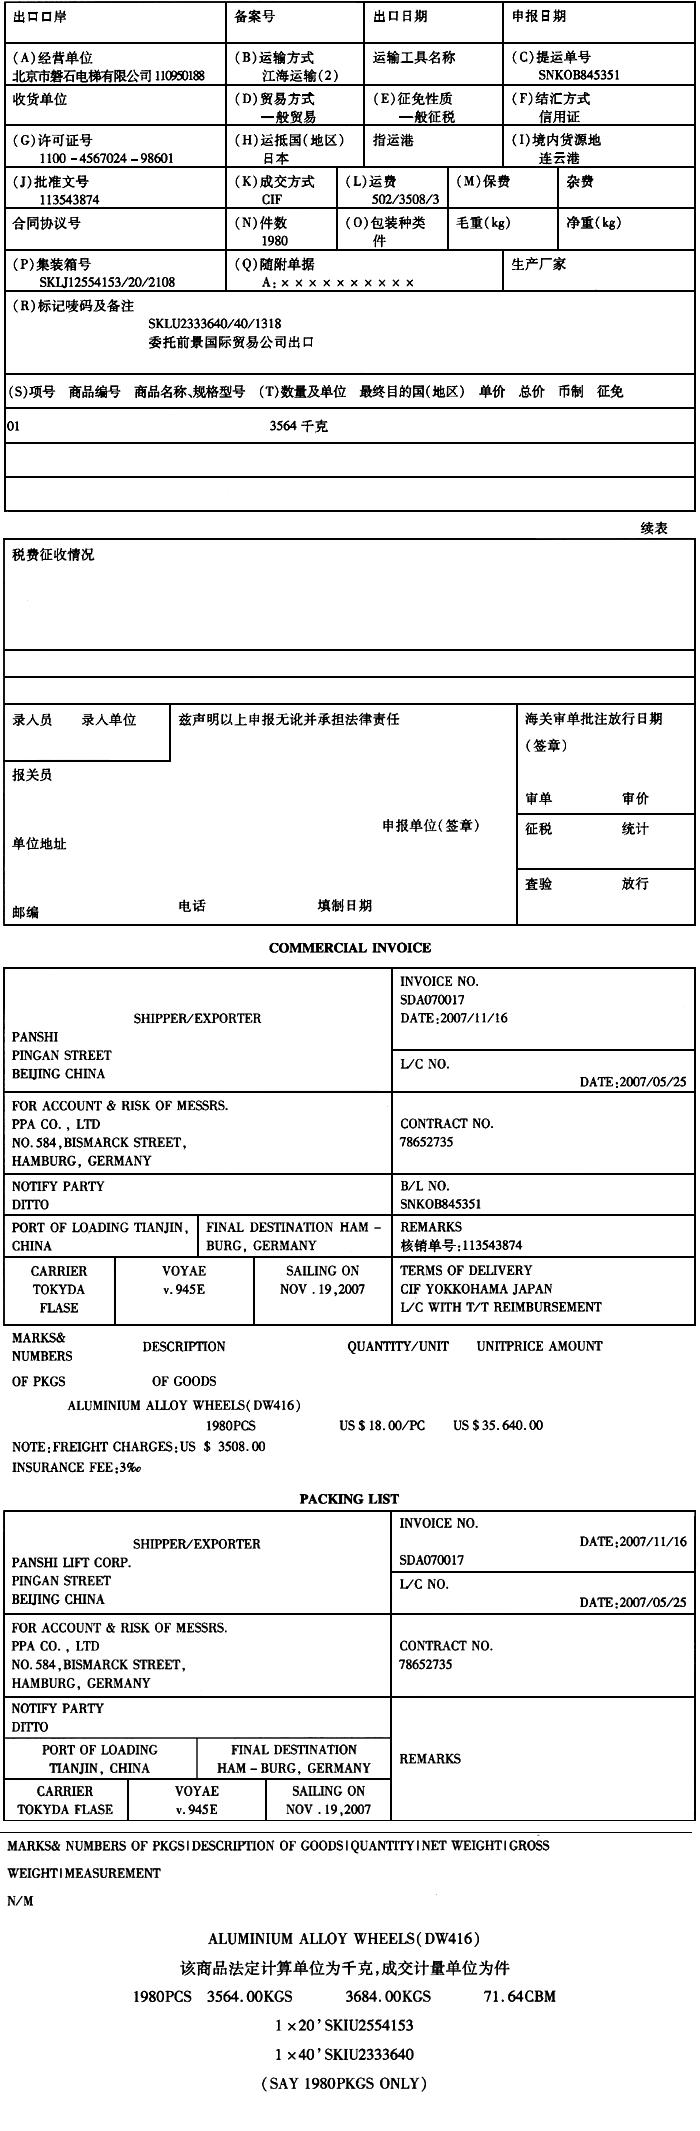 资料：北京磐石电梯有限公司（110950188)委托前景国际贸易公司出口一批电梯配件，该批配件属于《